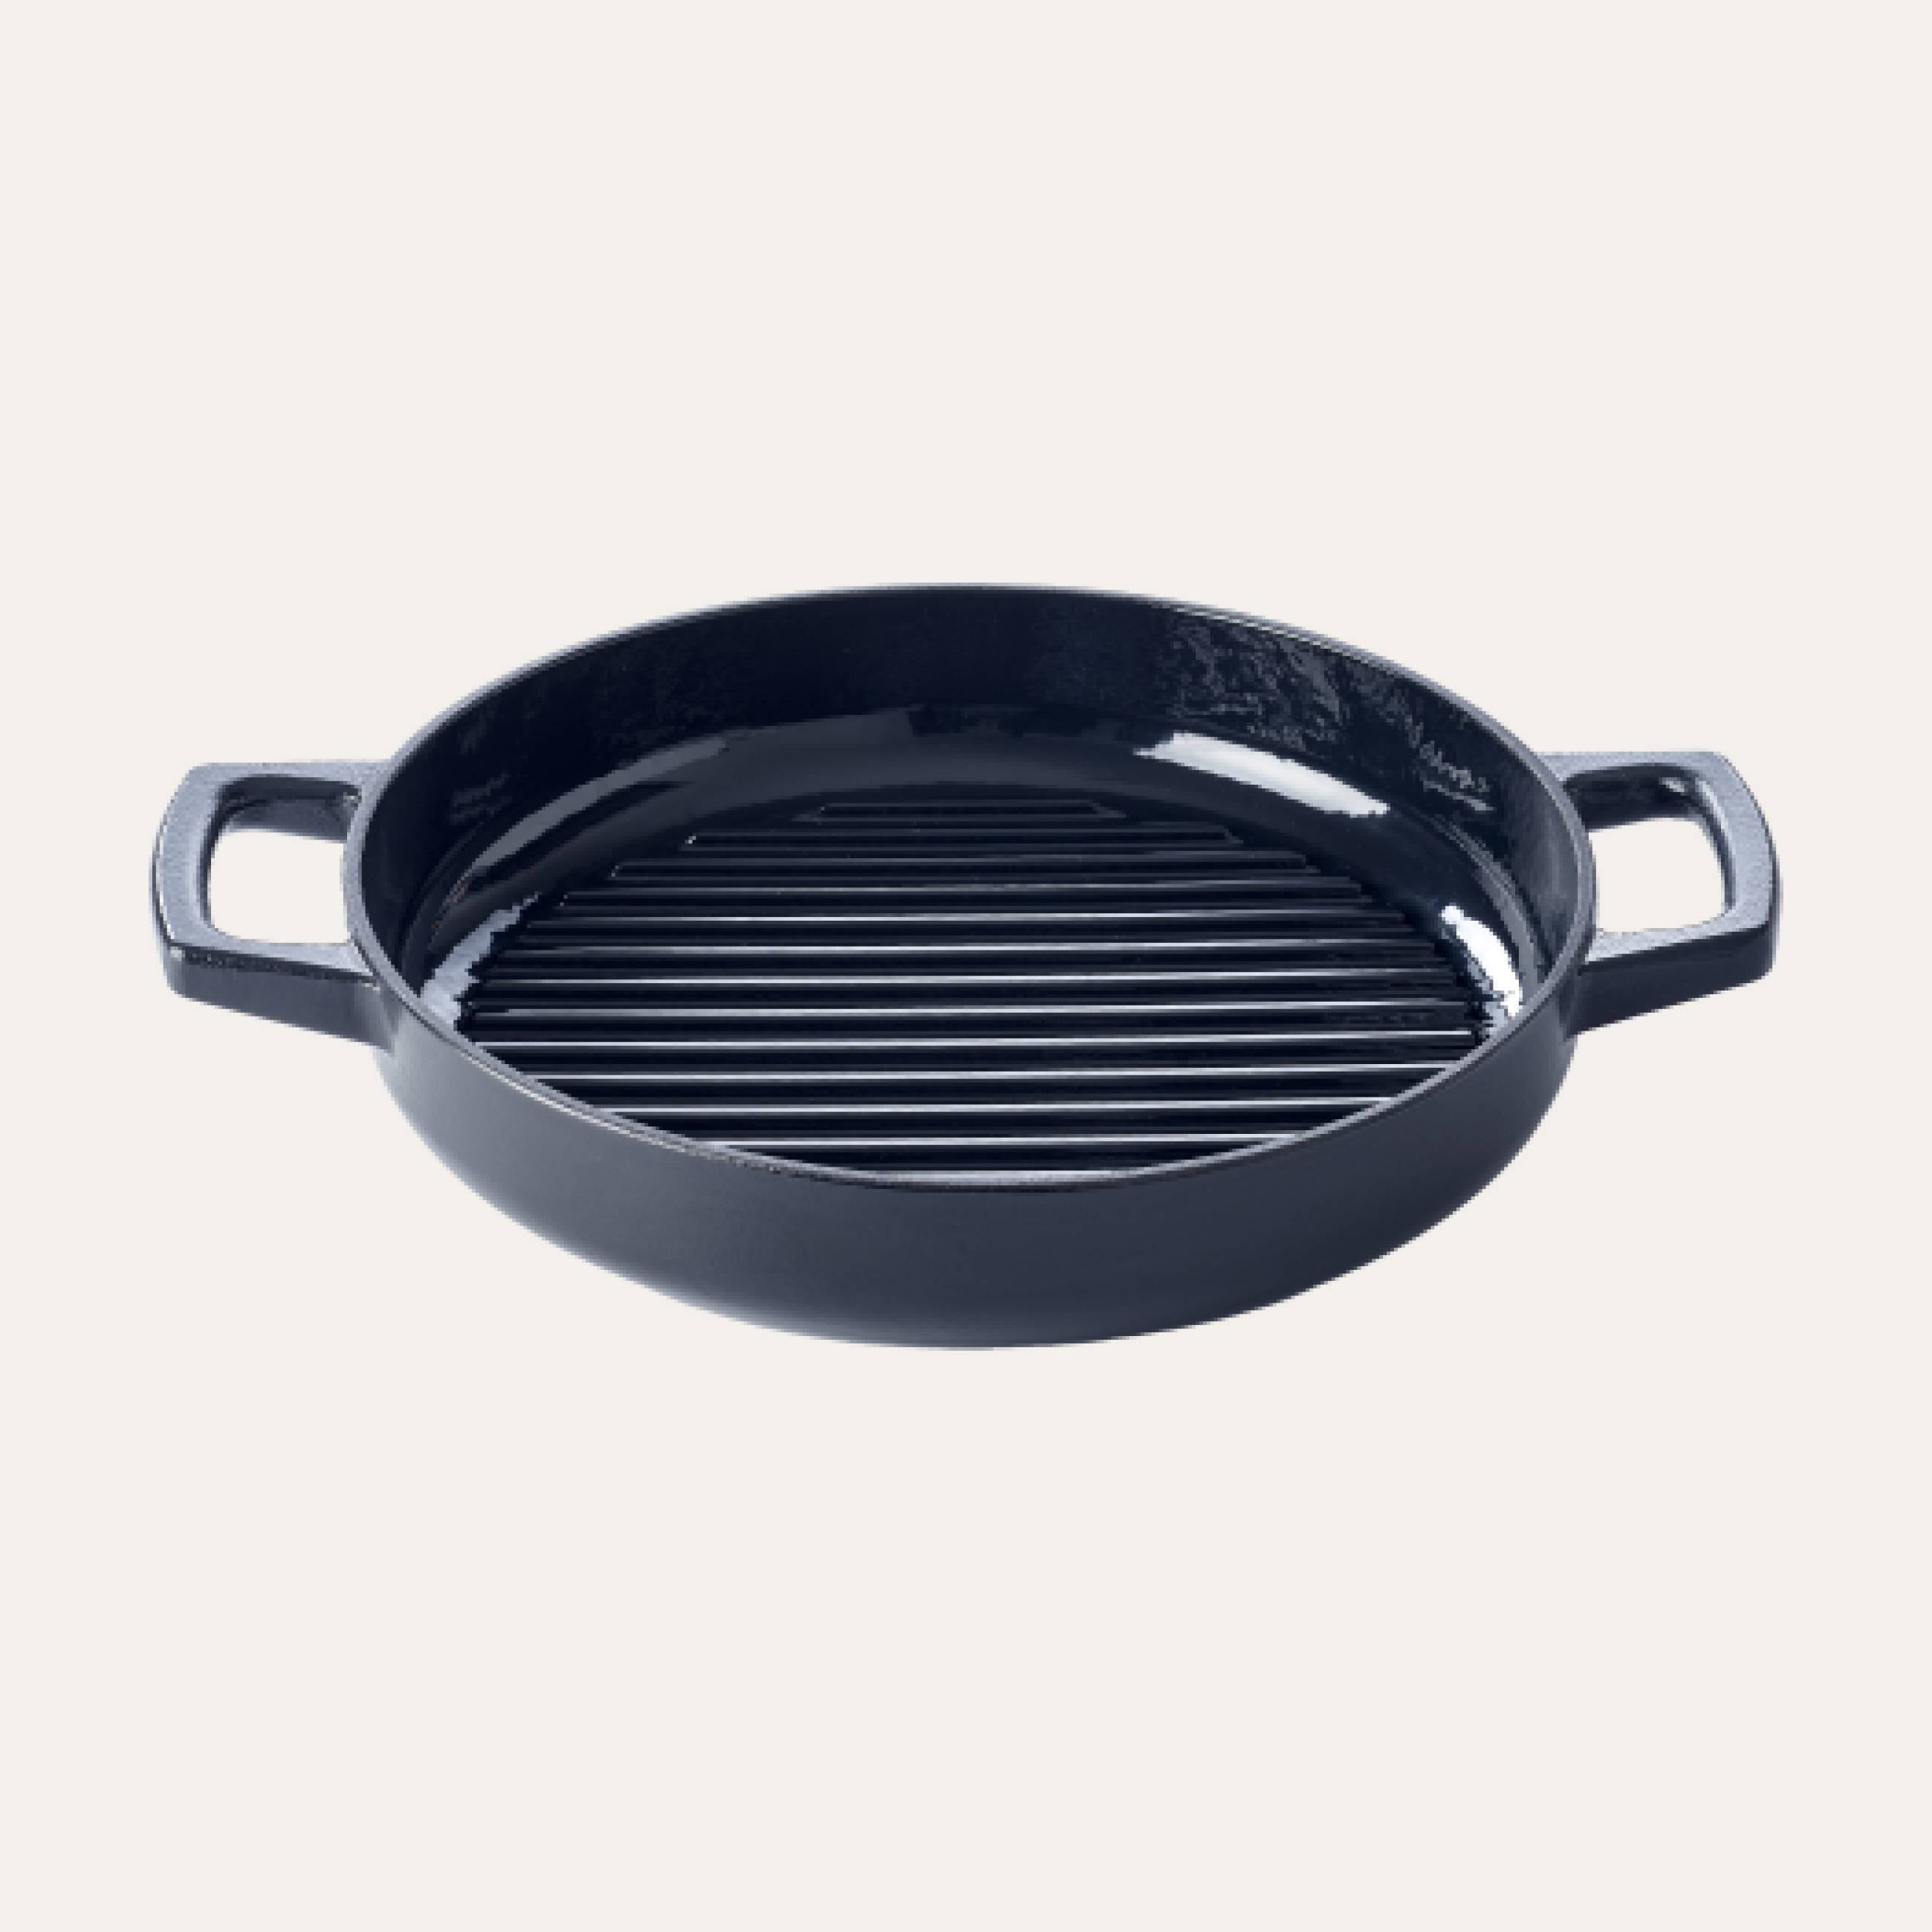 Alva Chef 11.8 Stainless Steel Frying Pan